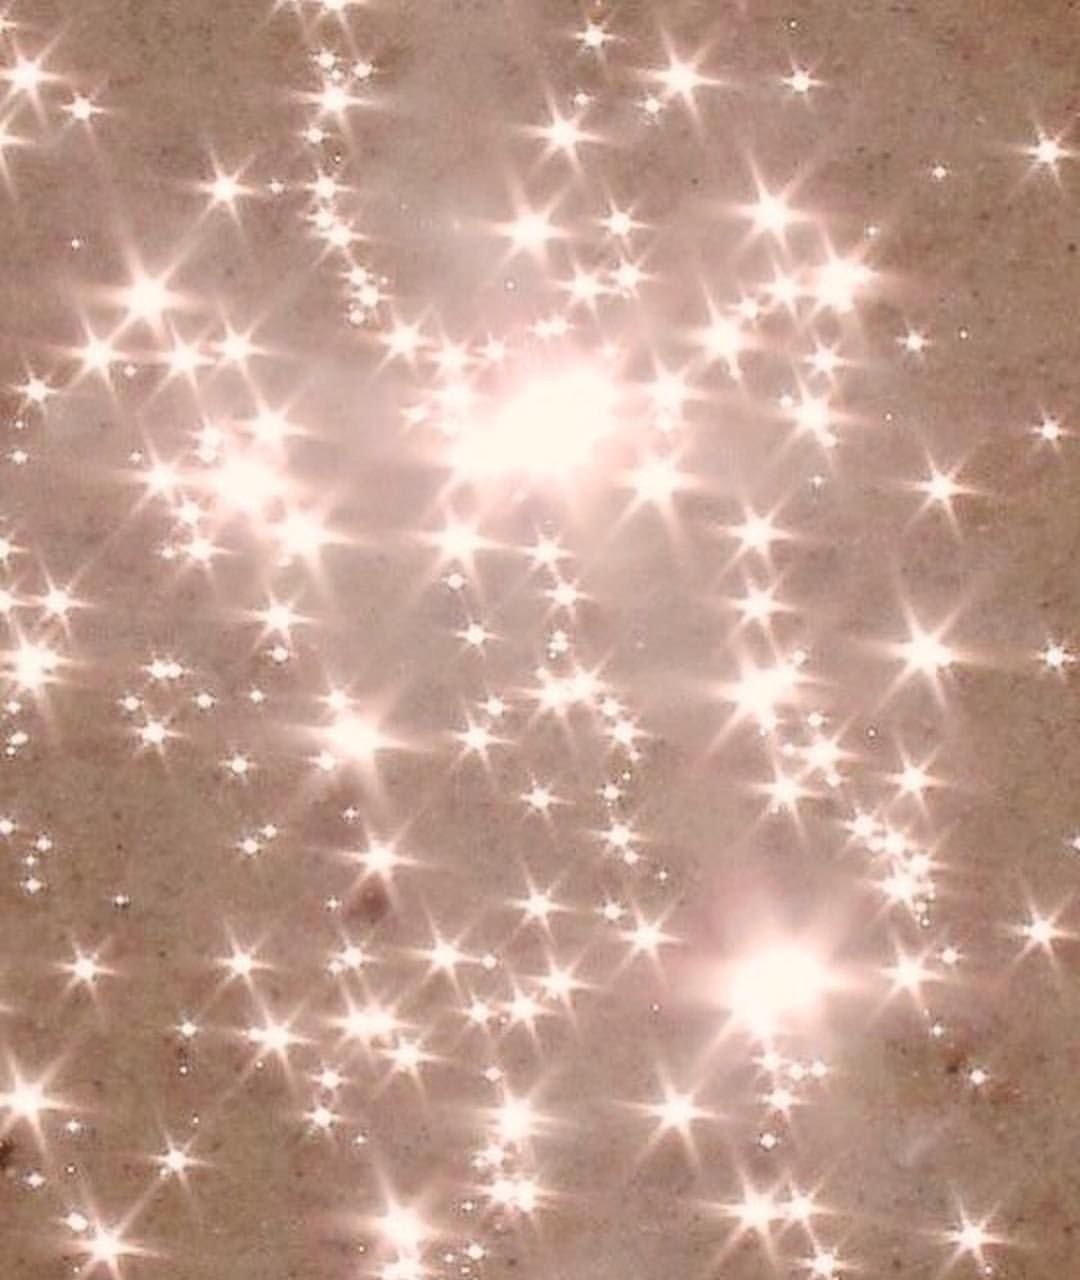 Stars shine brightest